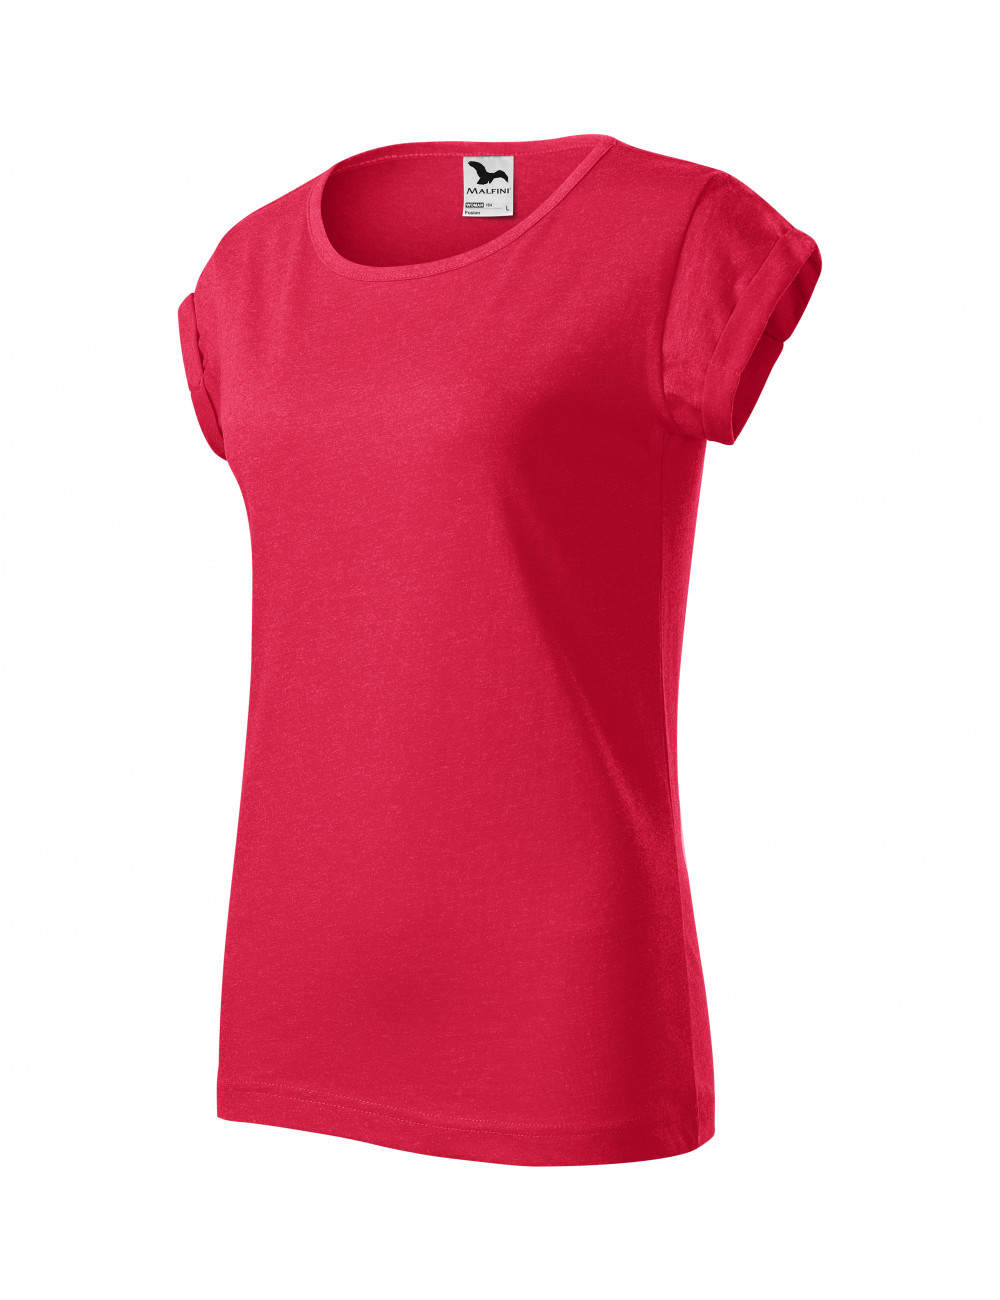 Damen-Fusion-T-Shirt 164 rot meliert Adler Malfini